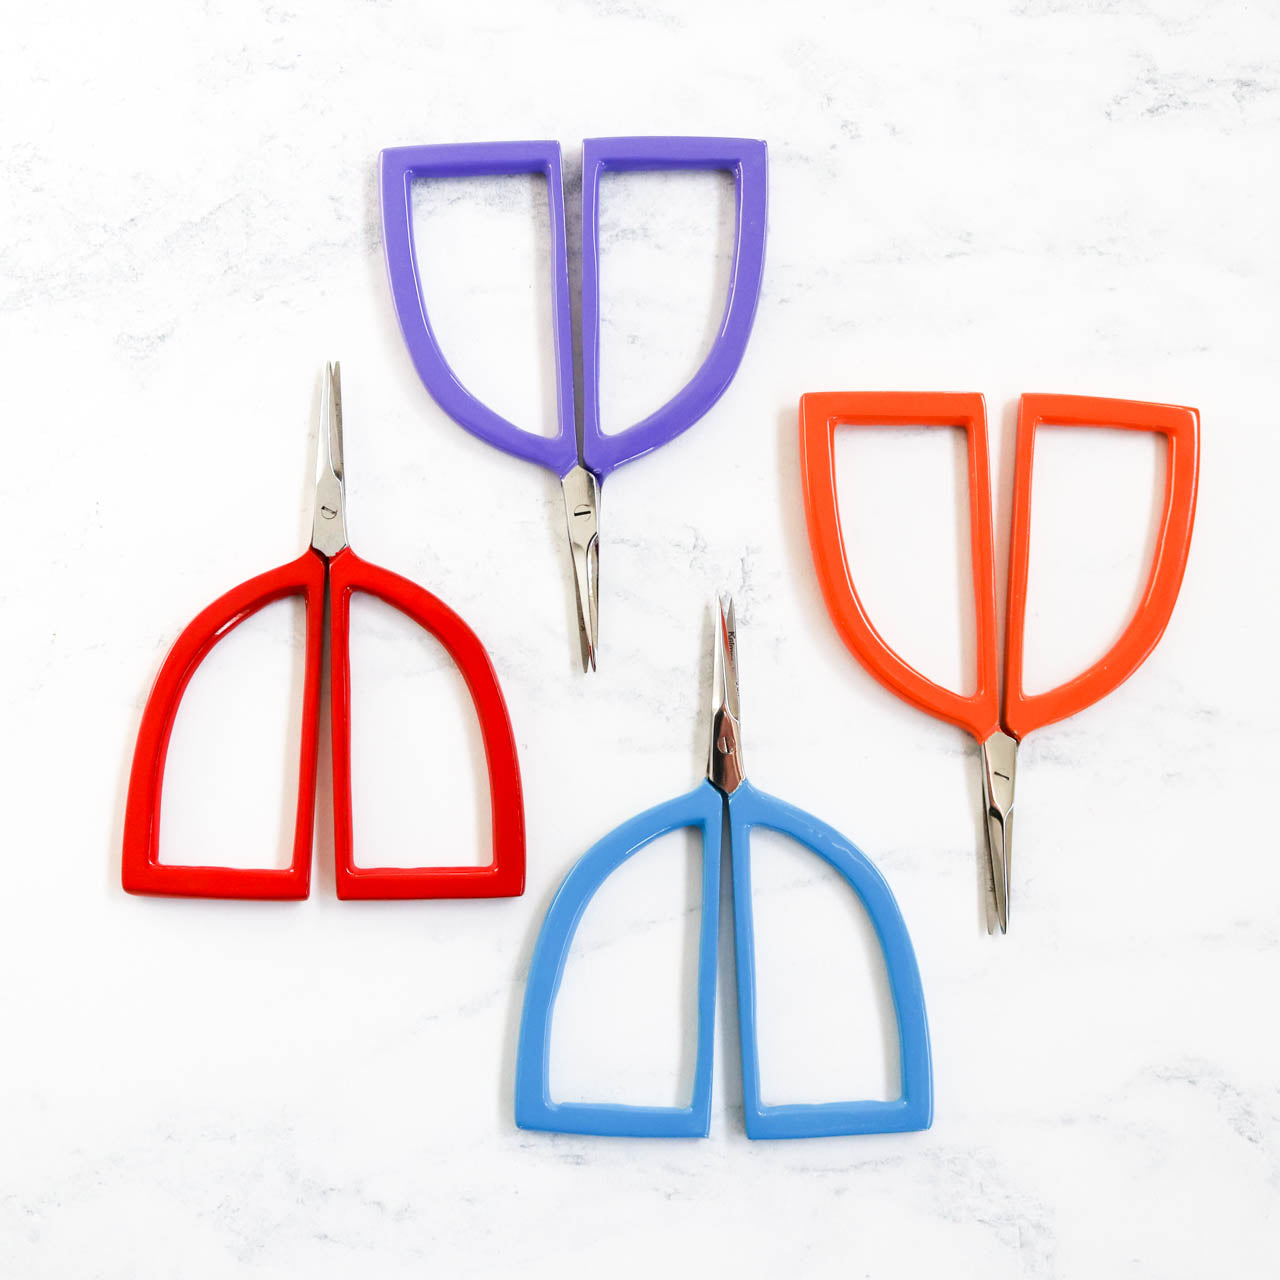 Stork Scissors - Purple Metallic - Quiltak Quilt Basting System